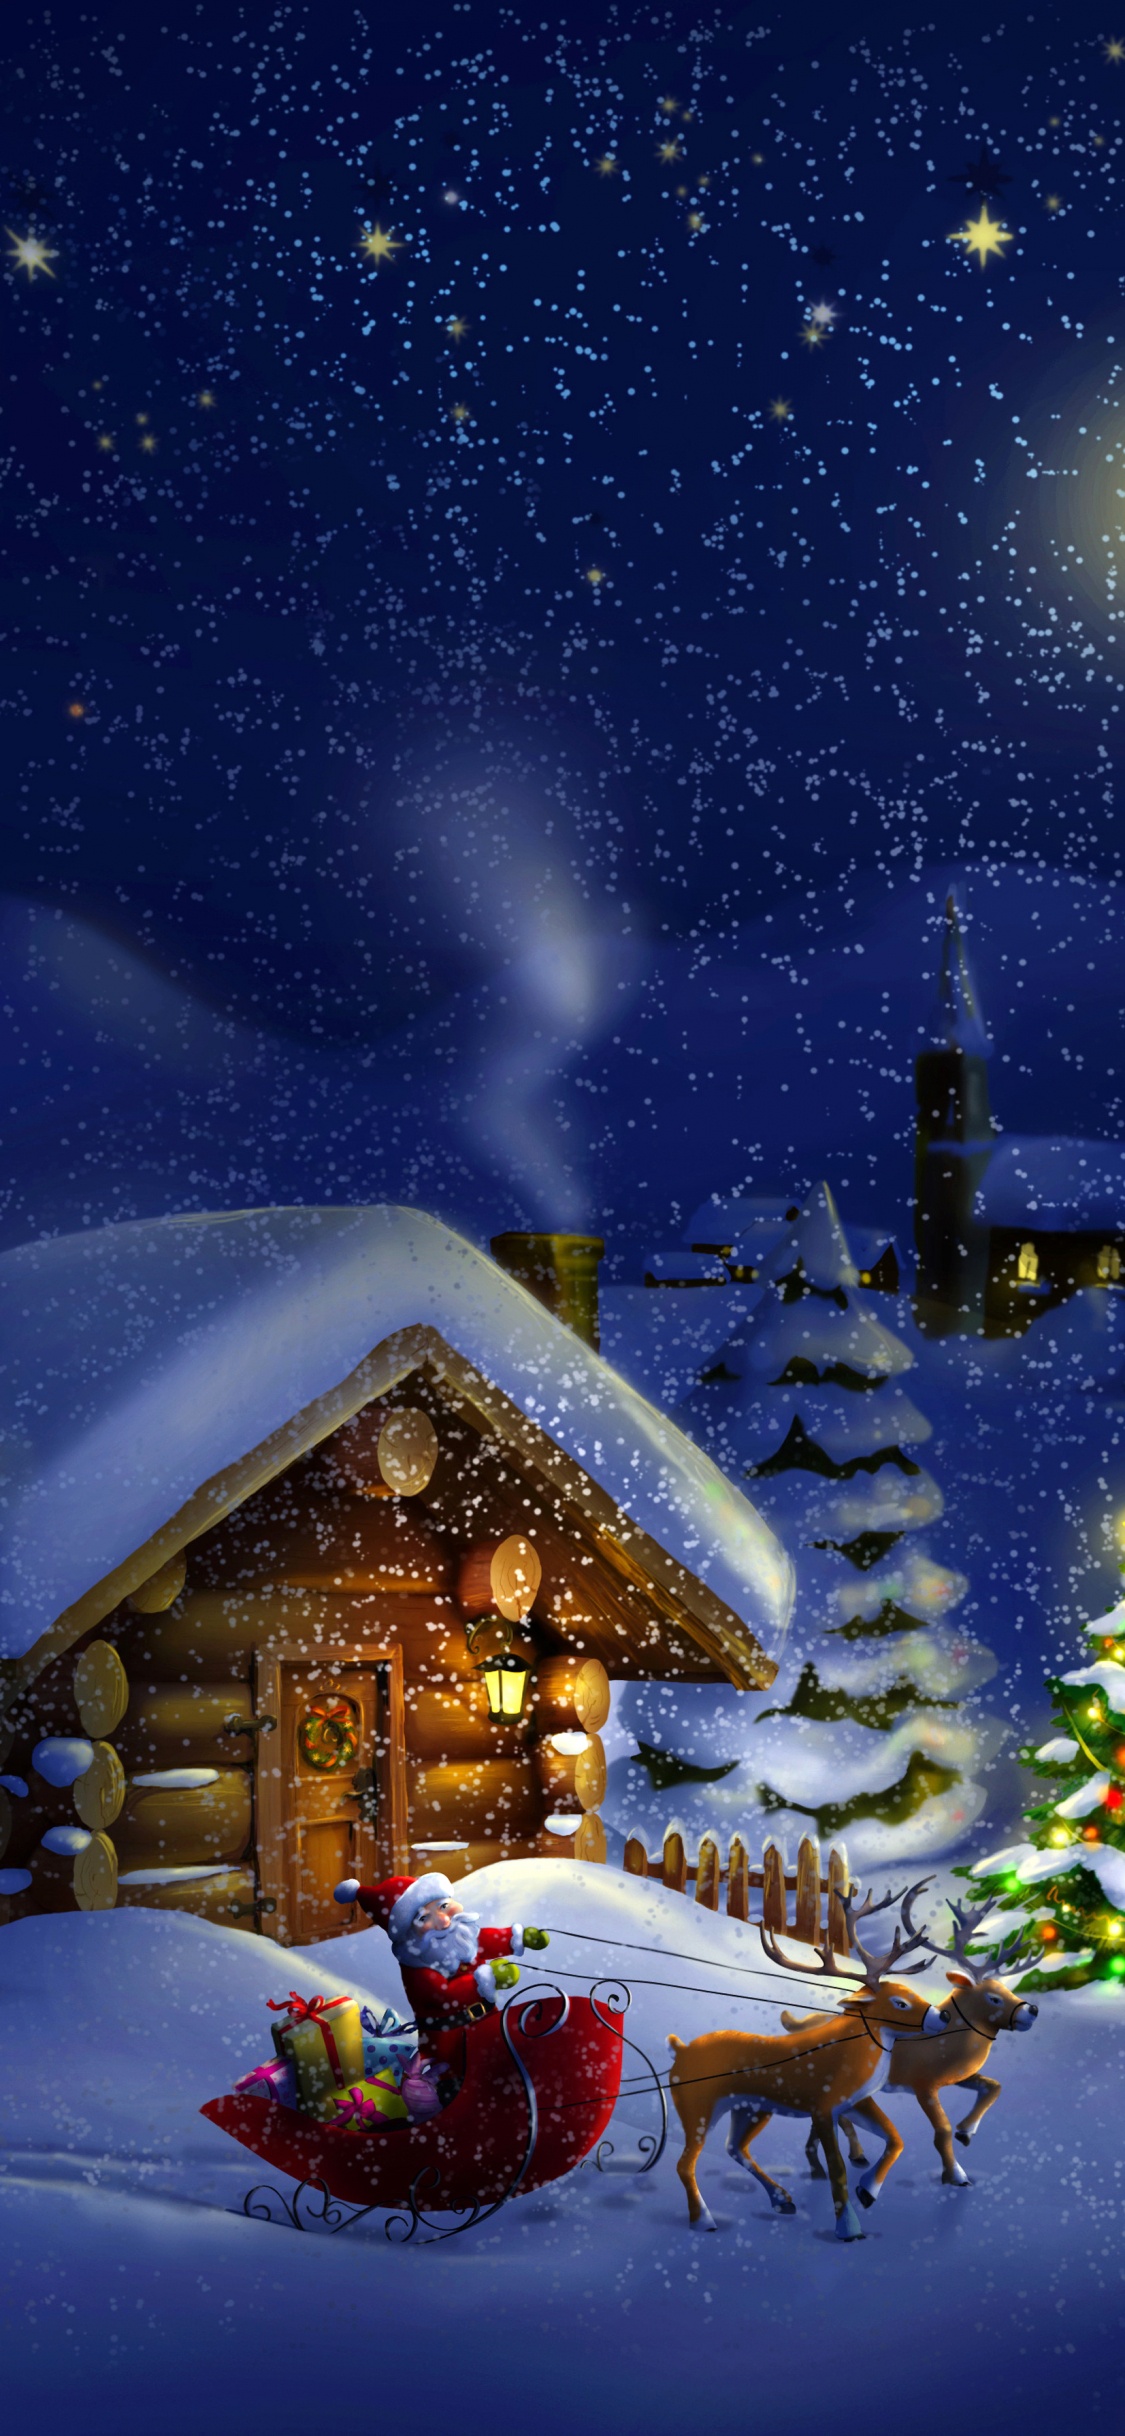 Le Jour De Noël, Santa Claus, Hiver, Neige, Nuit. Wallpaper in 1125x2436 Resolution